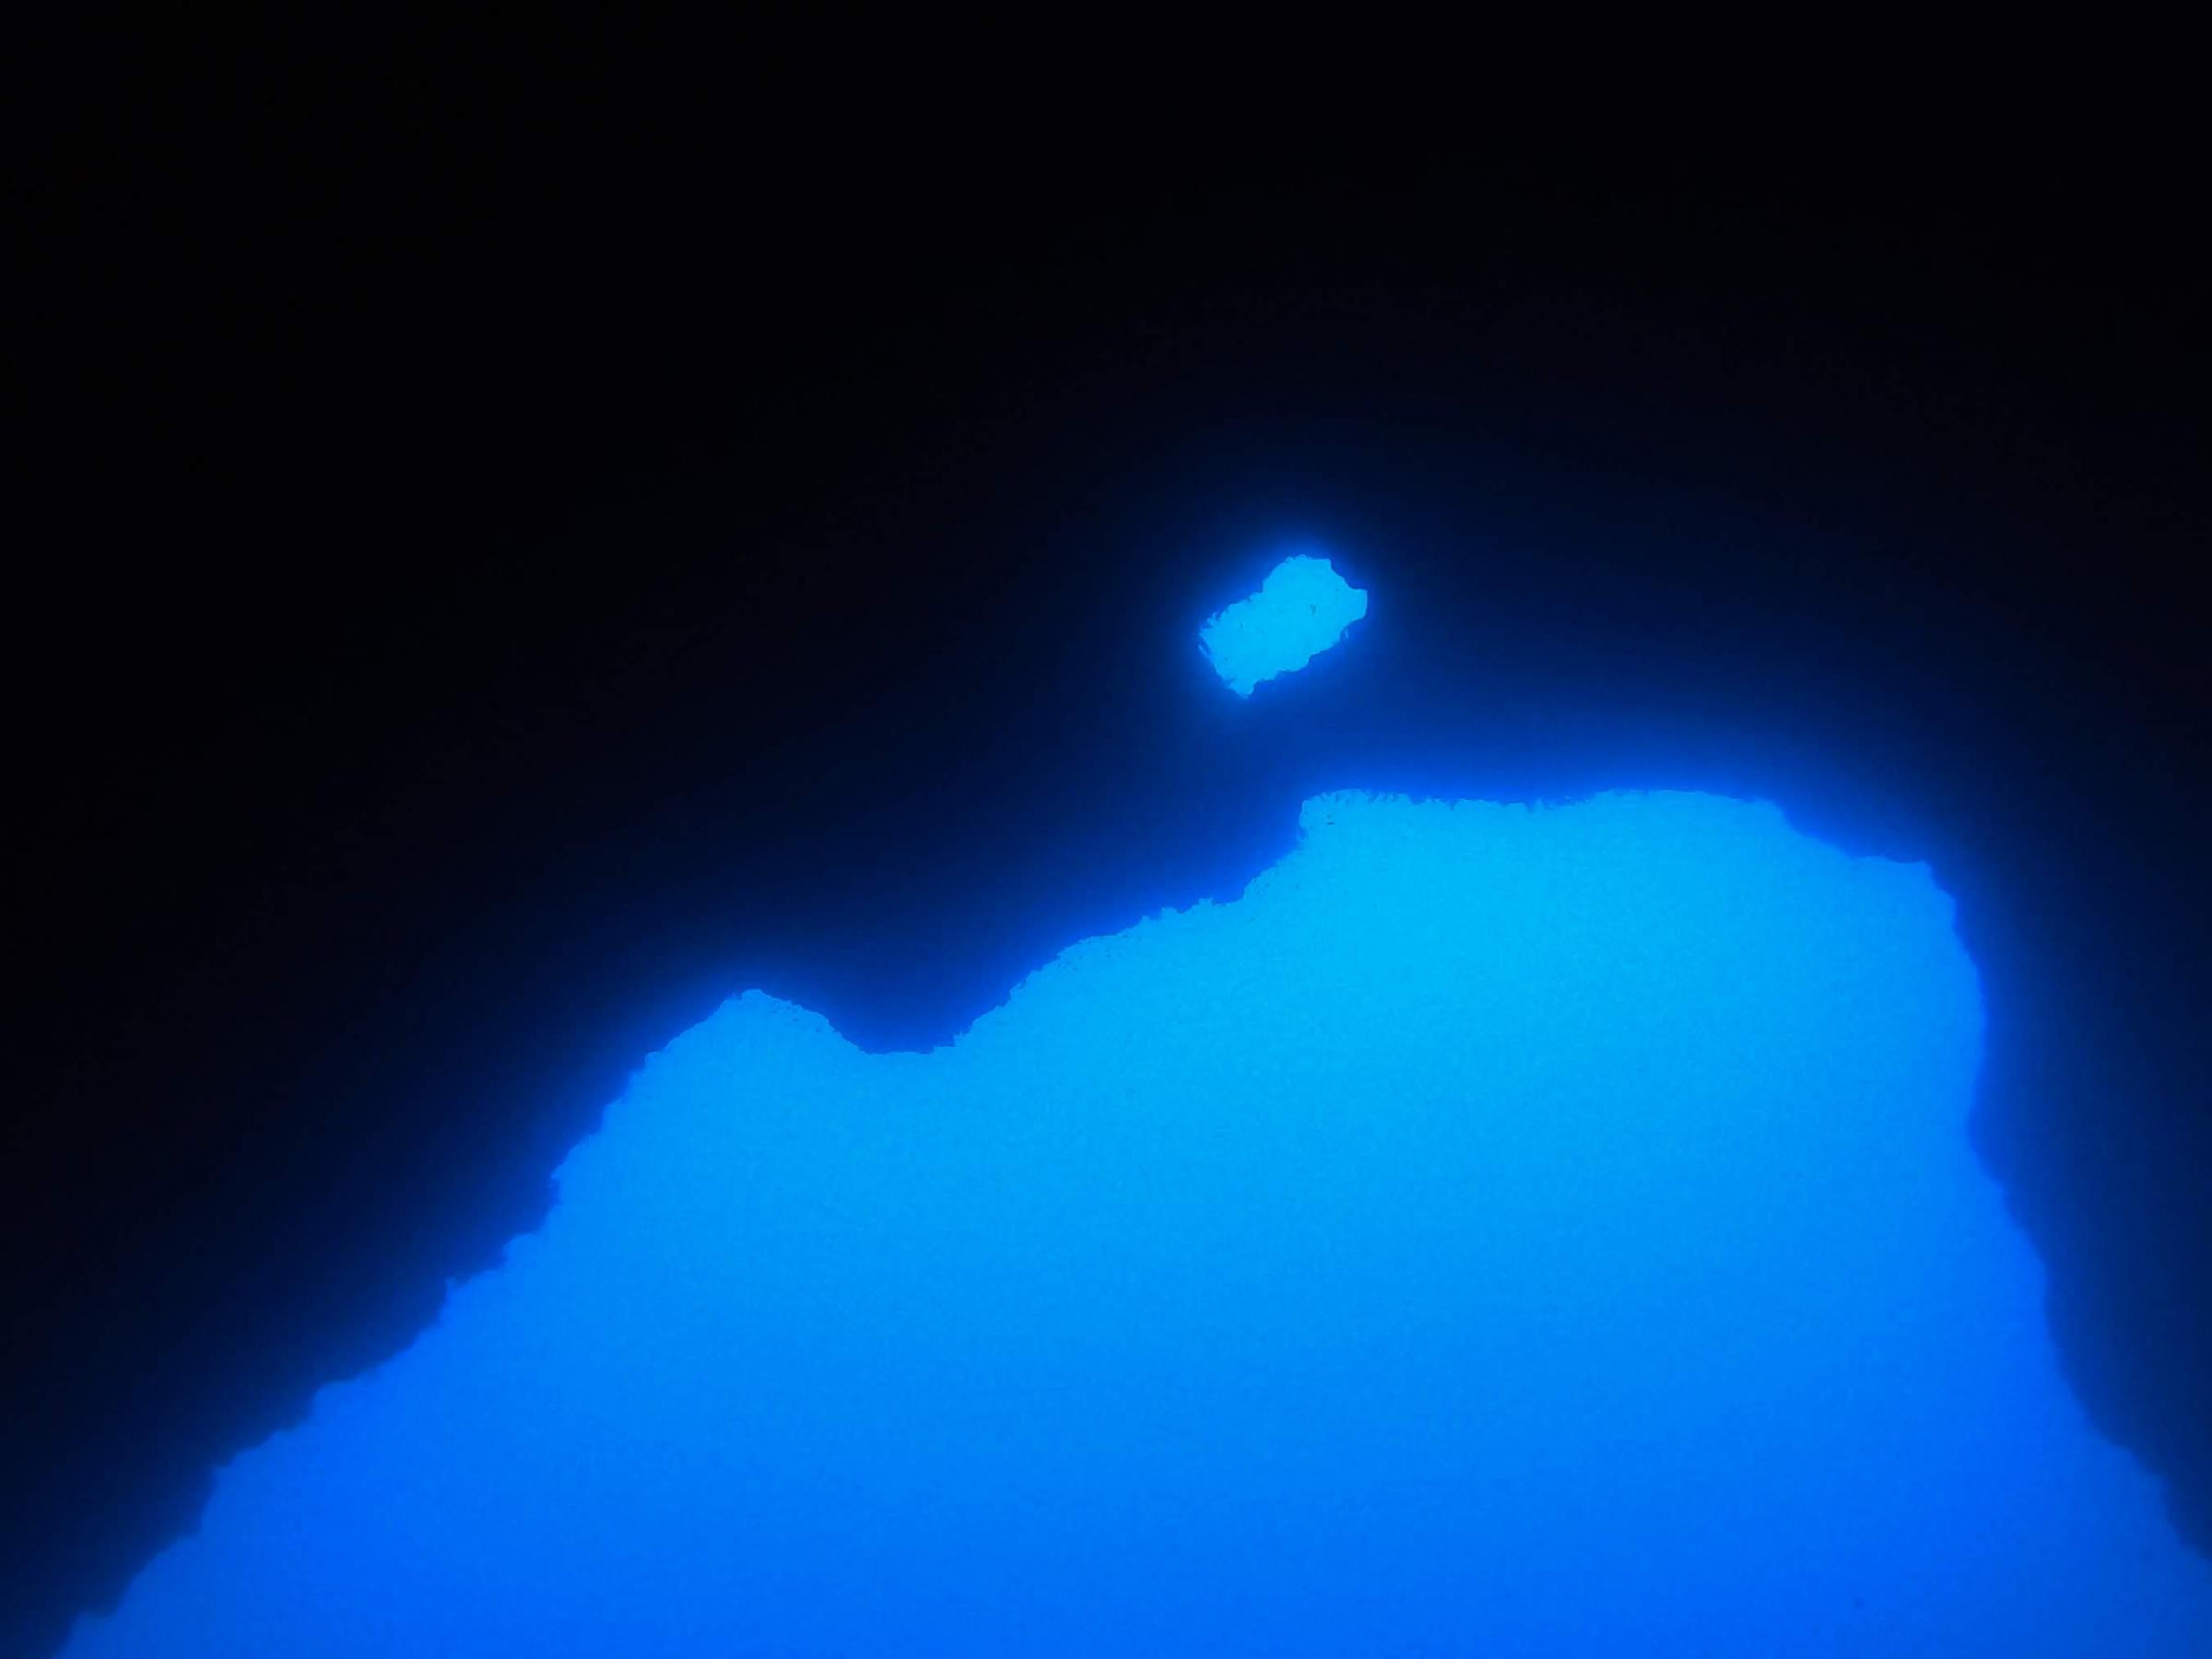 Cave Exit [Adam Sant]